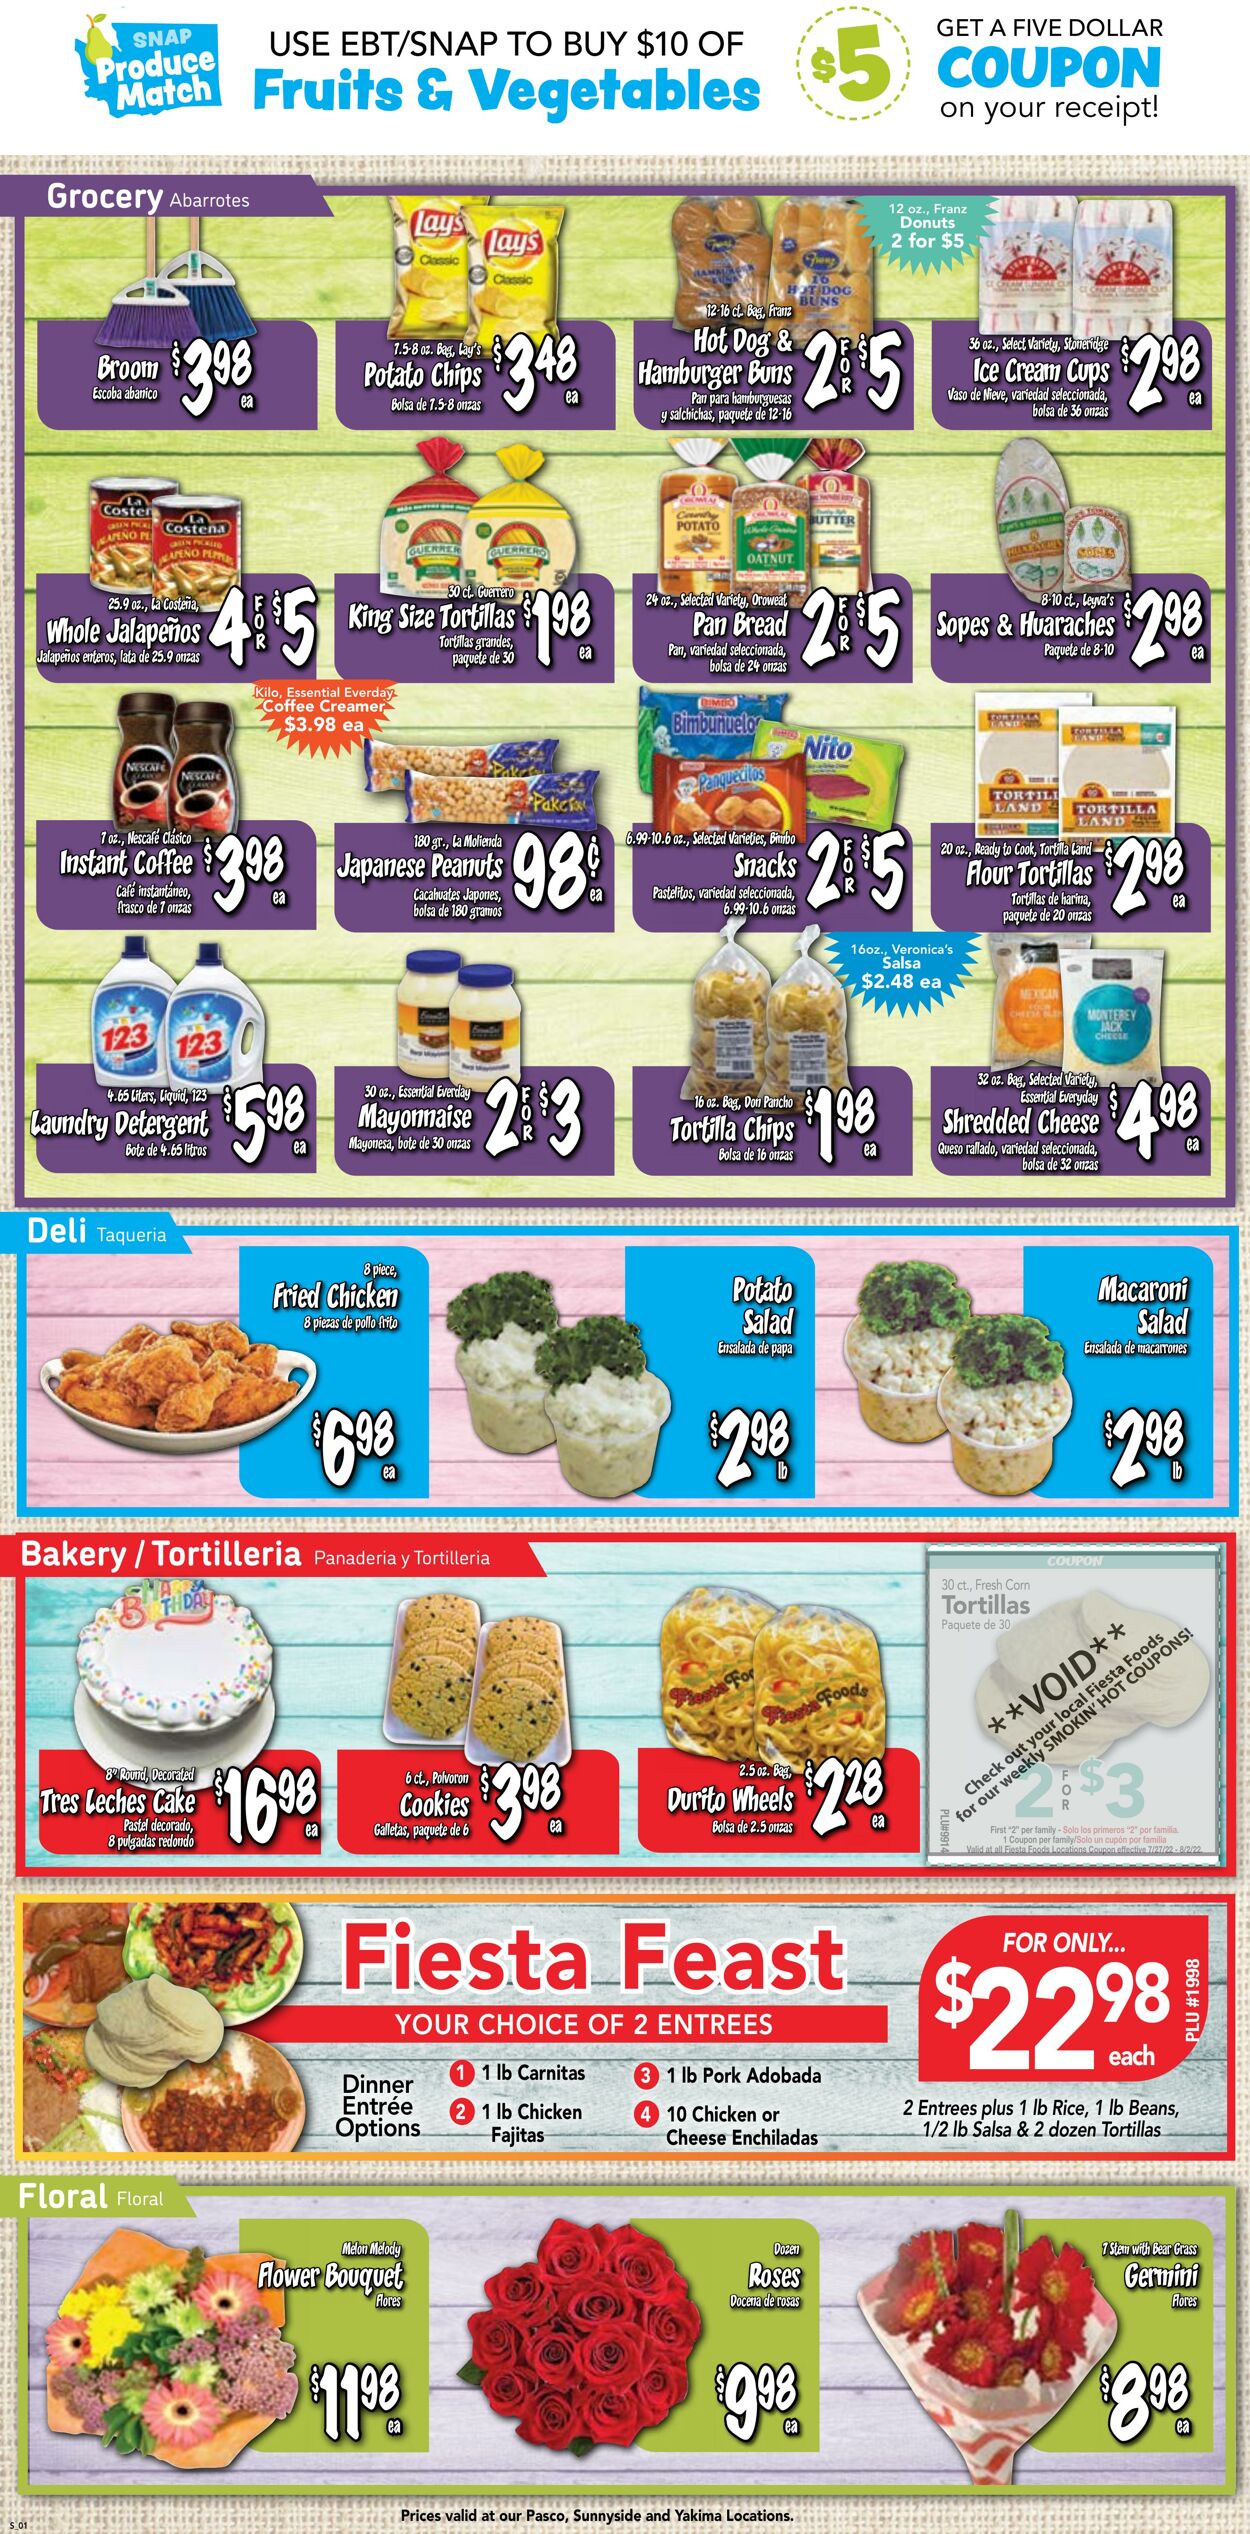 Weekly ad Fiesta Foods 07/27/2022 - 08/02/2022